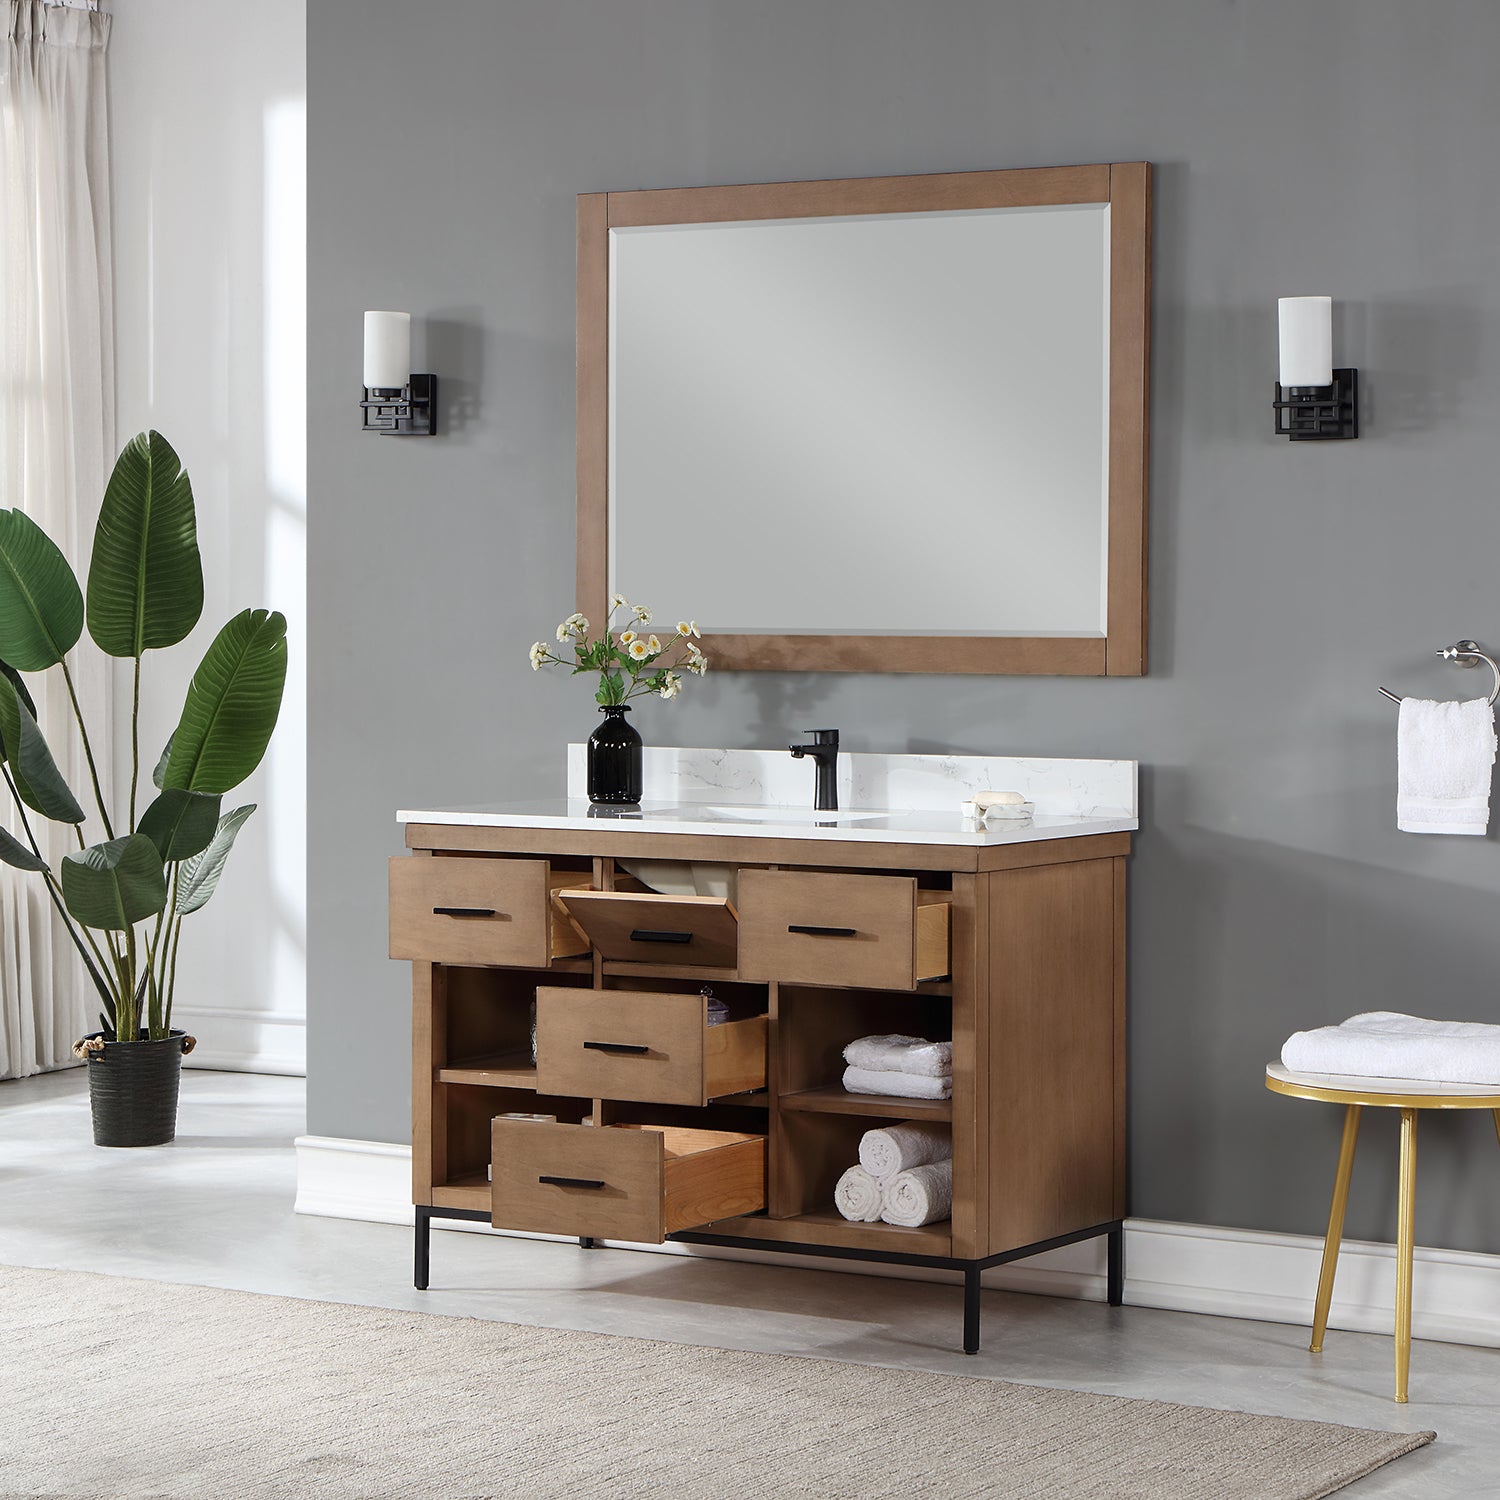 Kesia 48" Single Bathroom Vanity Set with Aosta White Composite Stone Countertop